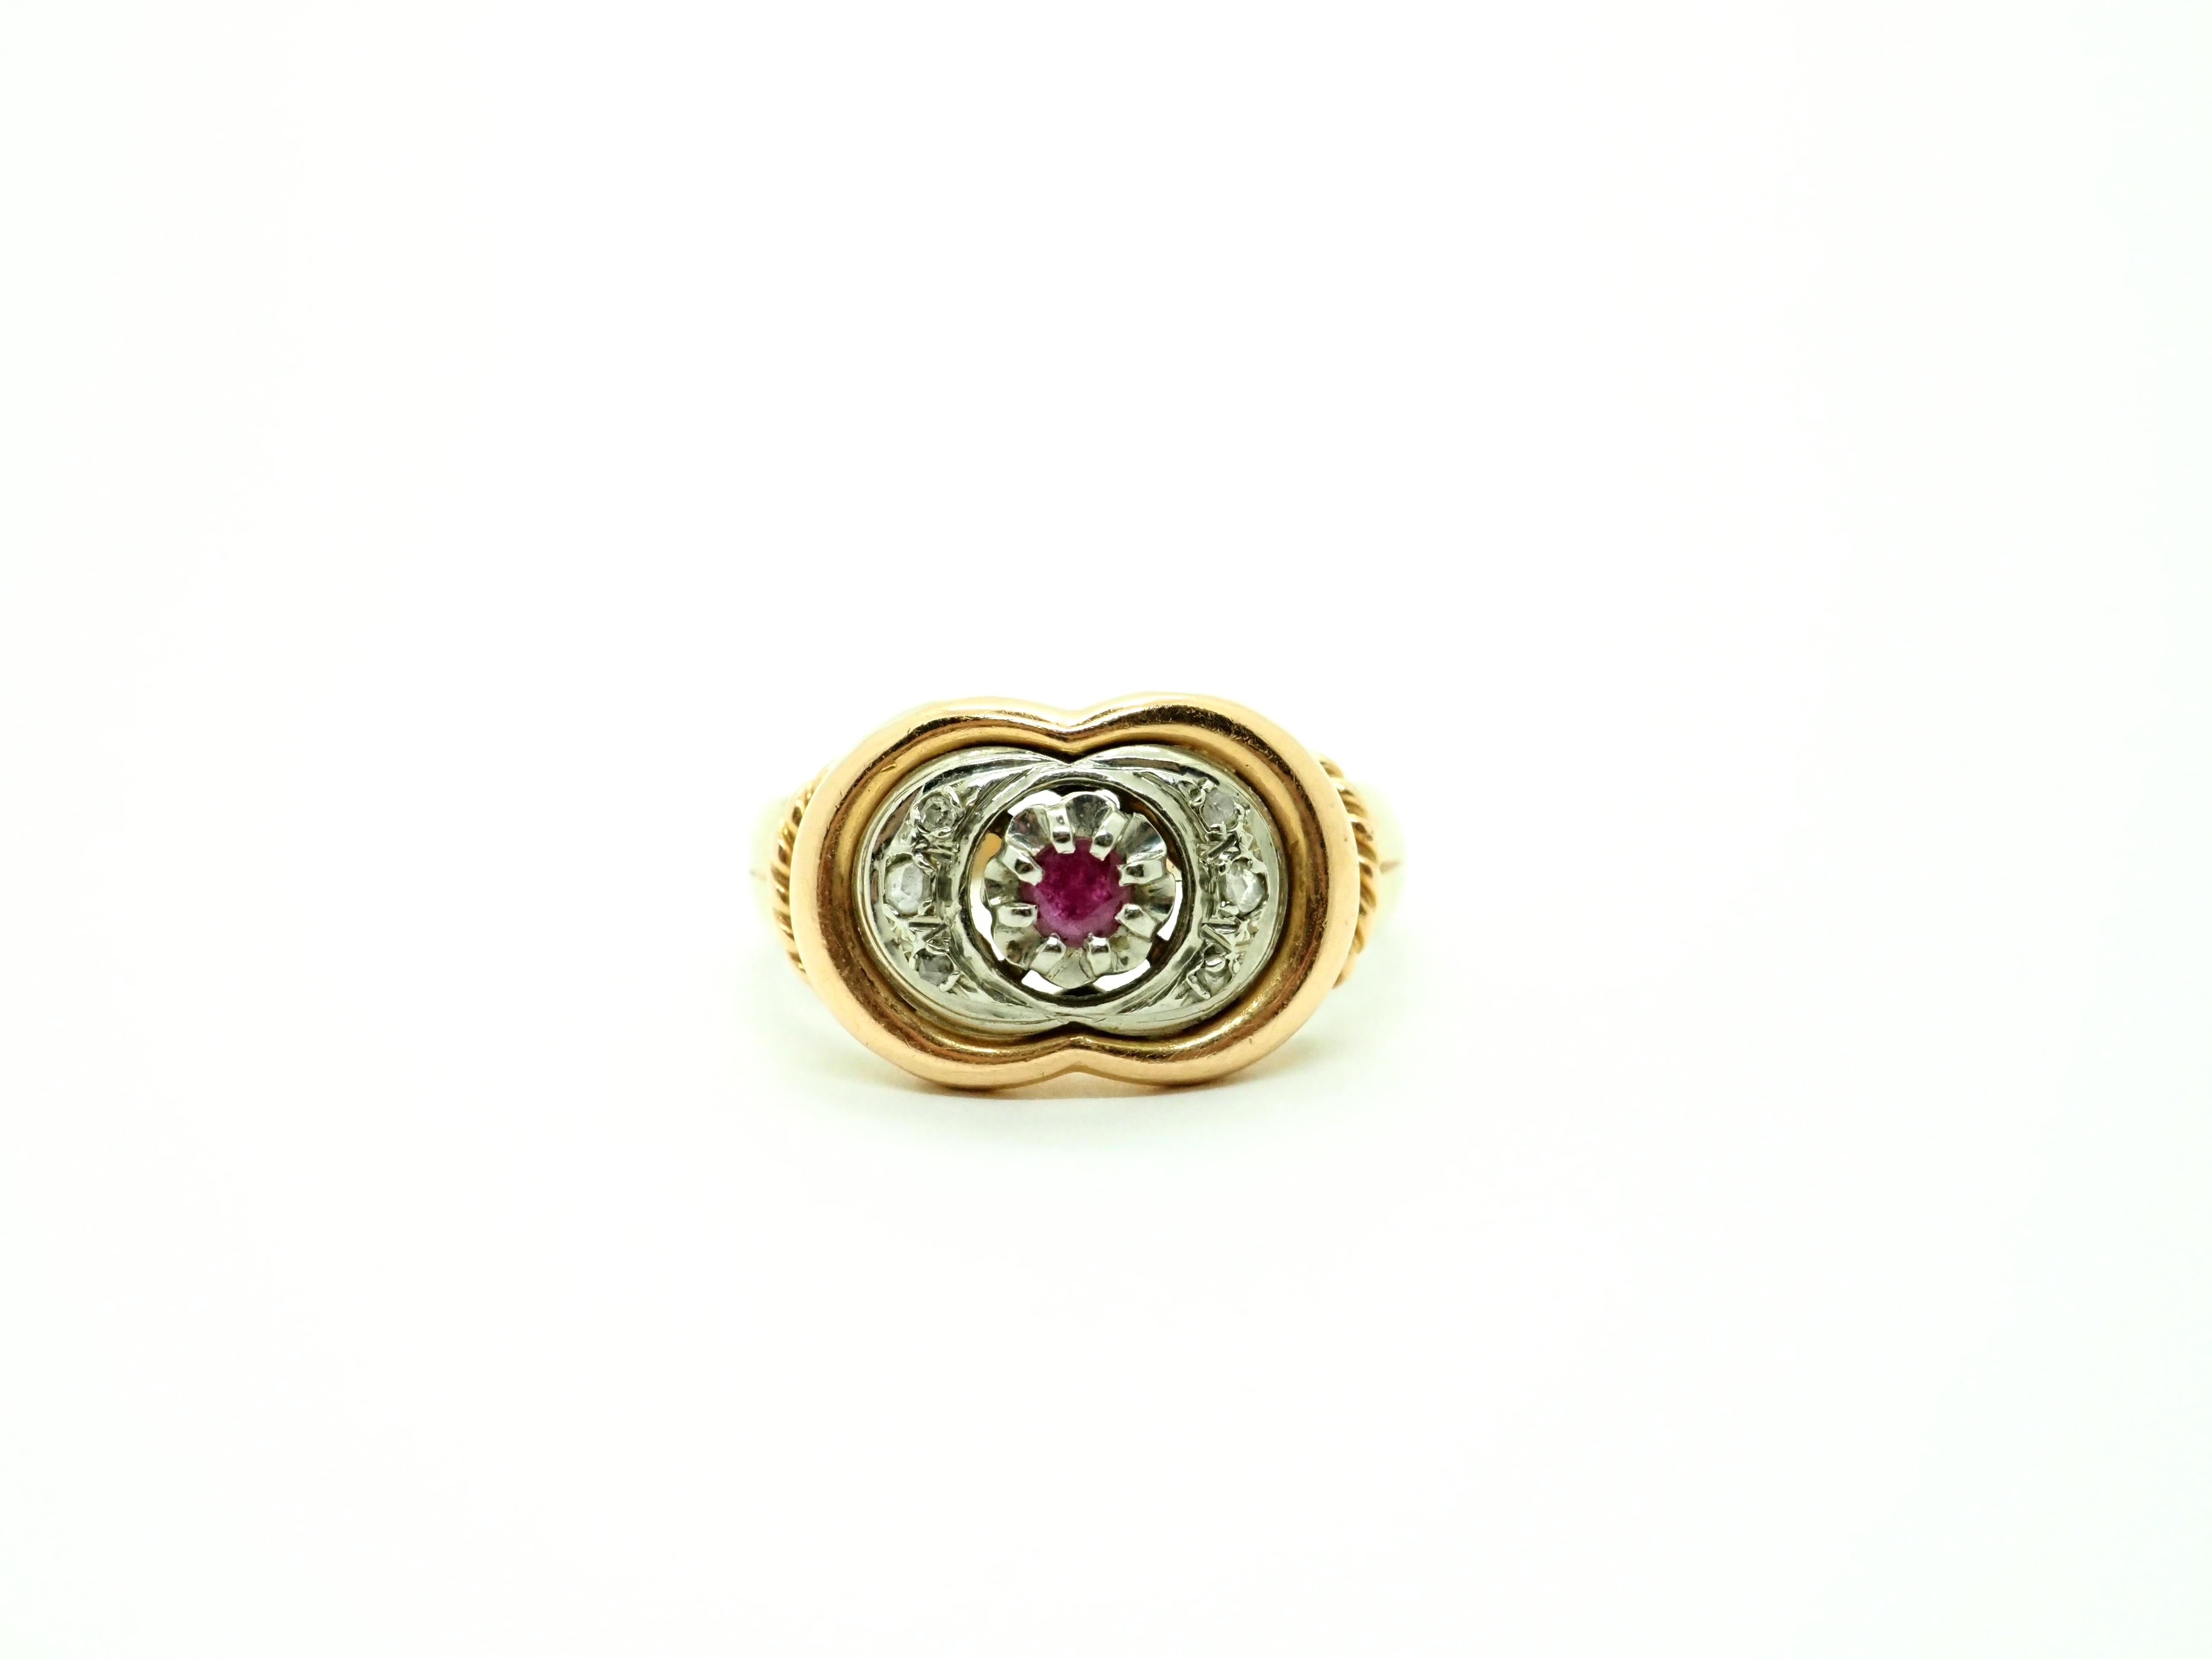 Erleben Sie Luxus wie nie zuvor mit unserem exquisiten Vintage-Ring aus 18 Karat Rosé- und Weißgold. 
Dieses atemberaubende Schmuckstück zeigt einen fesselnden runden Rubin, der elegant von sechs schillernden Diamanten umgeben ist, von denen jeder